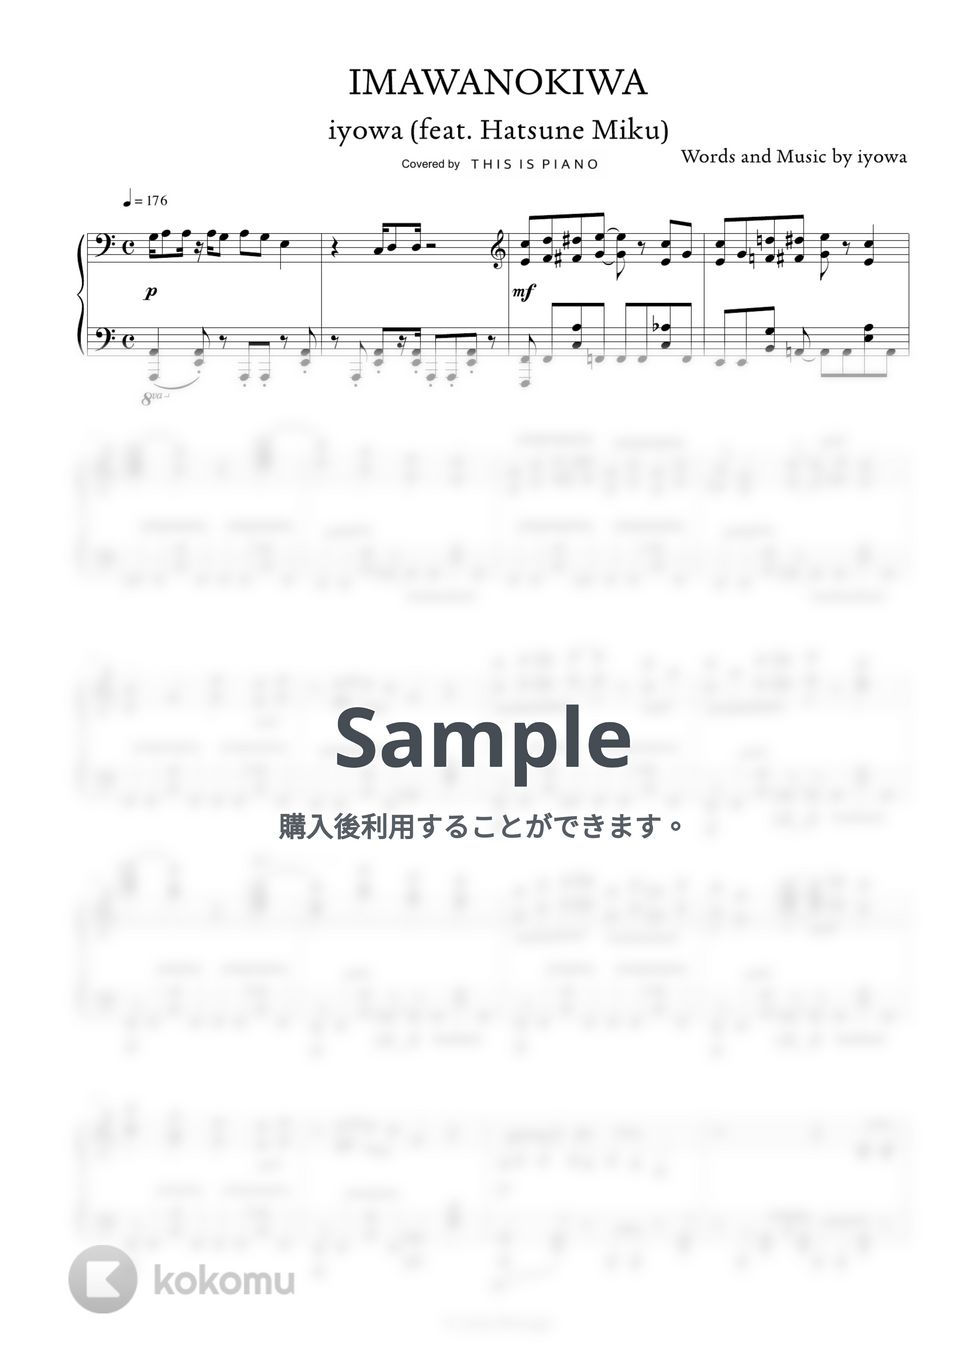 いよわ - IMAWANOKIWA by THIS IS PIANO